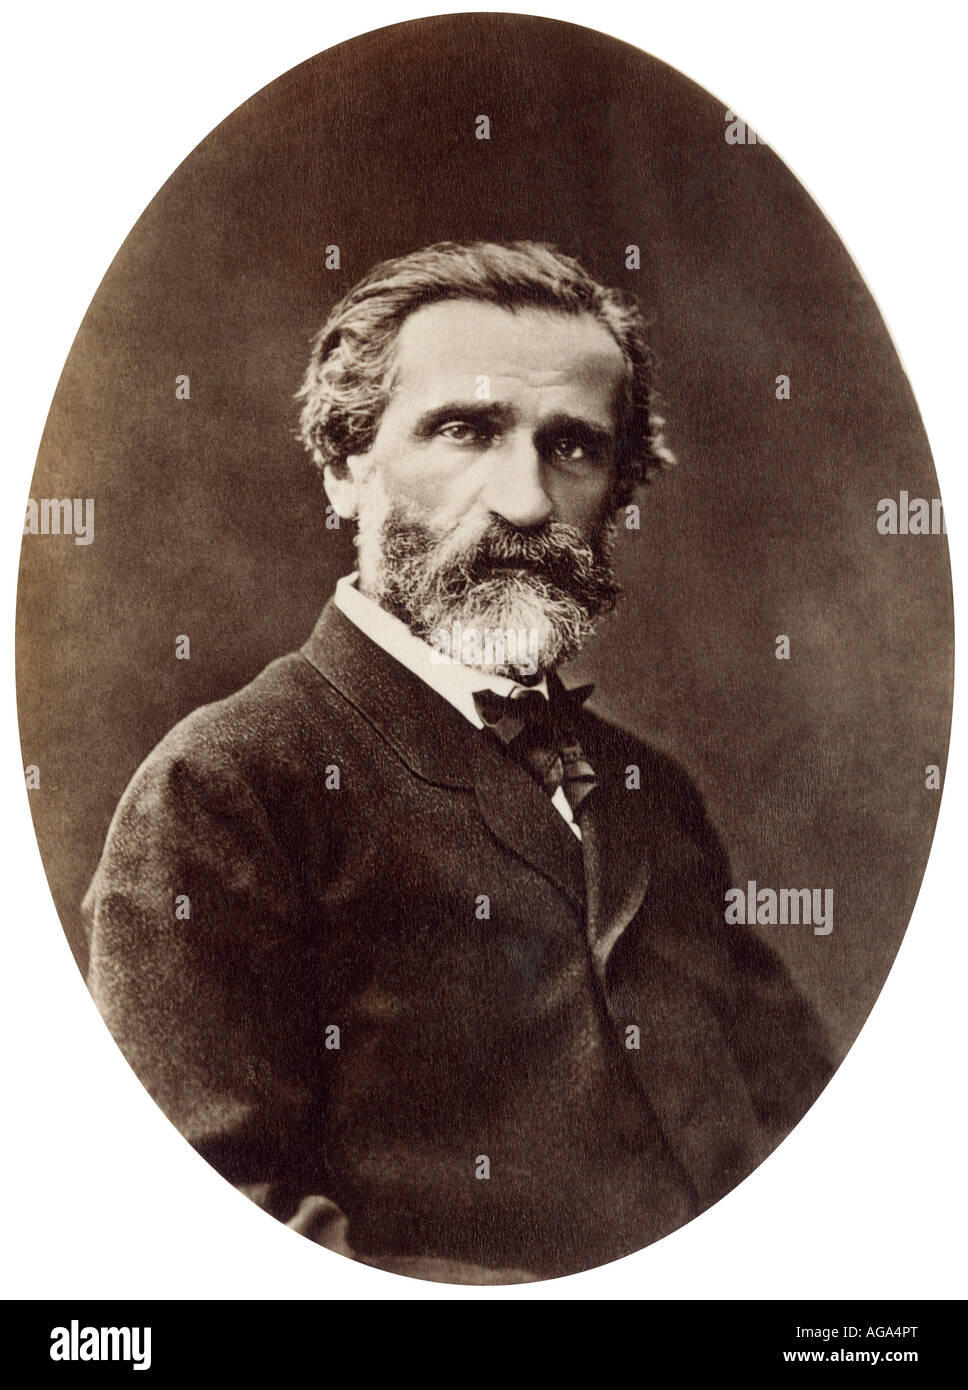 Giuseppe Verdi. Photograph Stock Photo